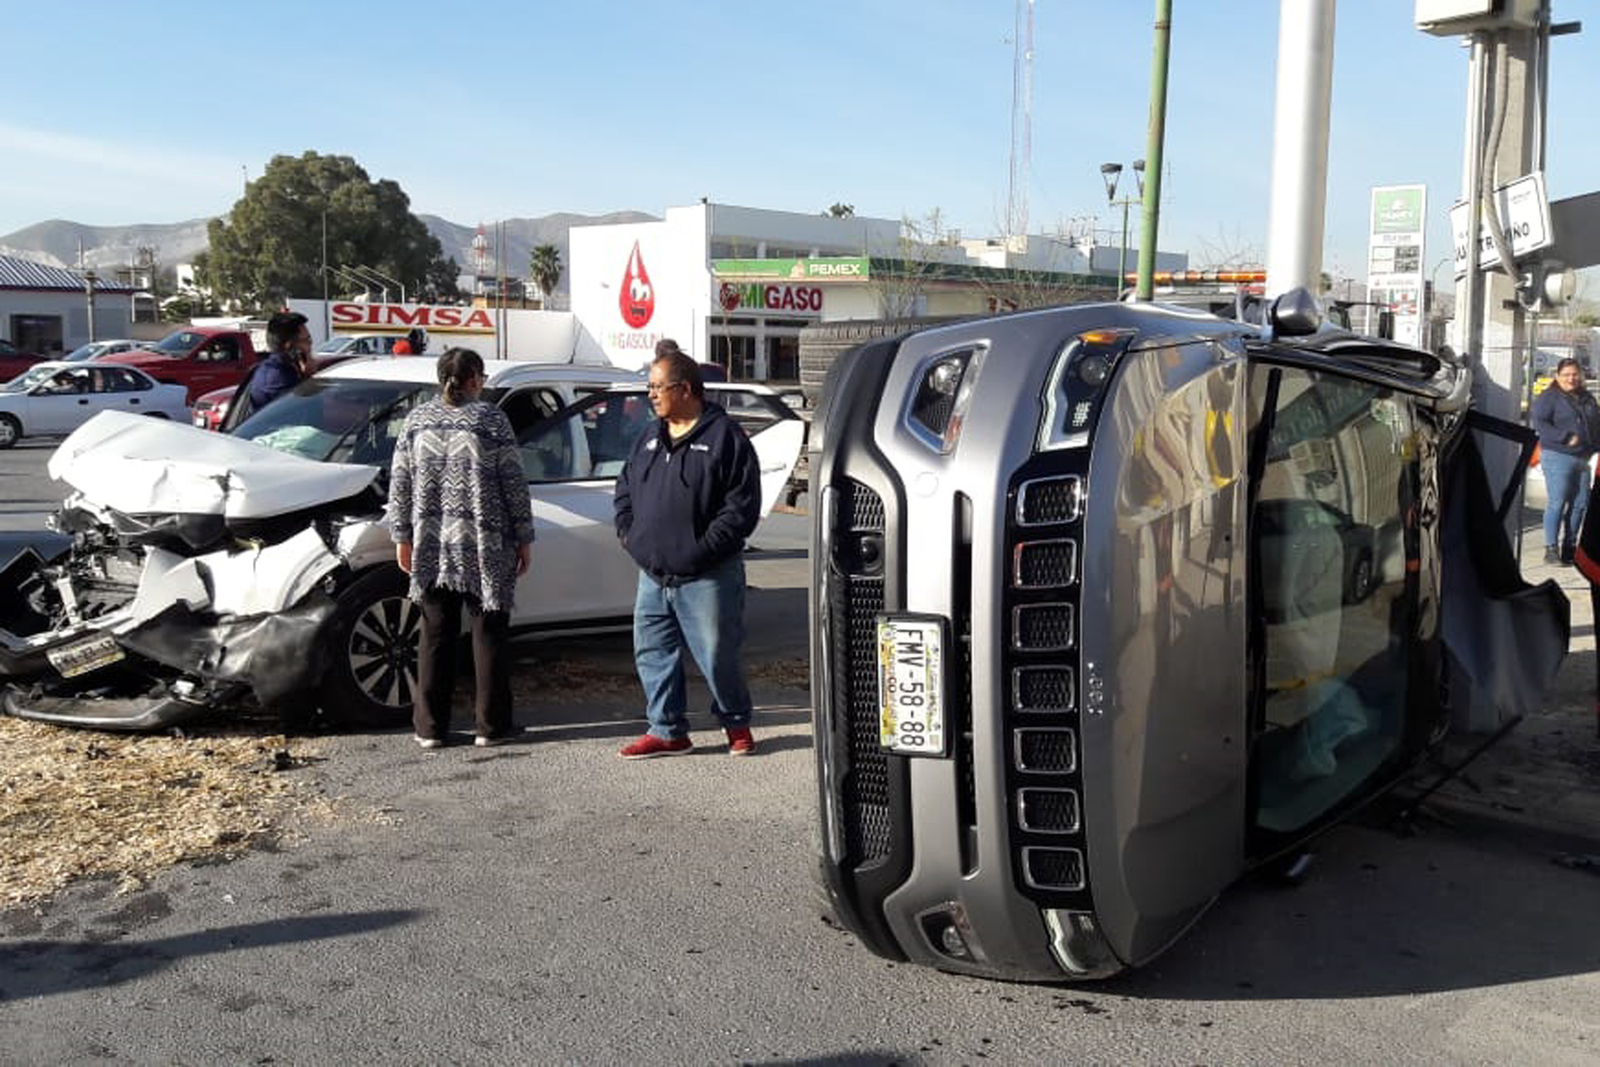 El accidente vial ocurrió la mañana del miércoles en el cruce de la avenida Juárez y la calle Enrique Treviño (24), en la zona Centro de la ciudad de Torreón.